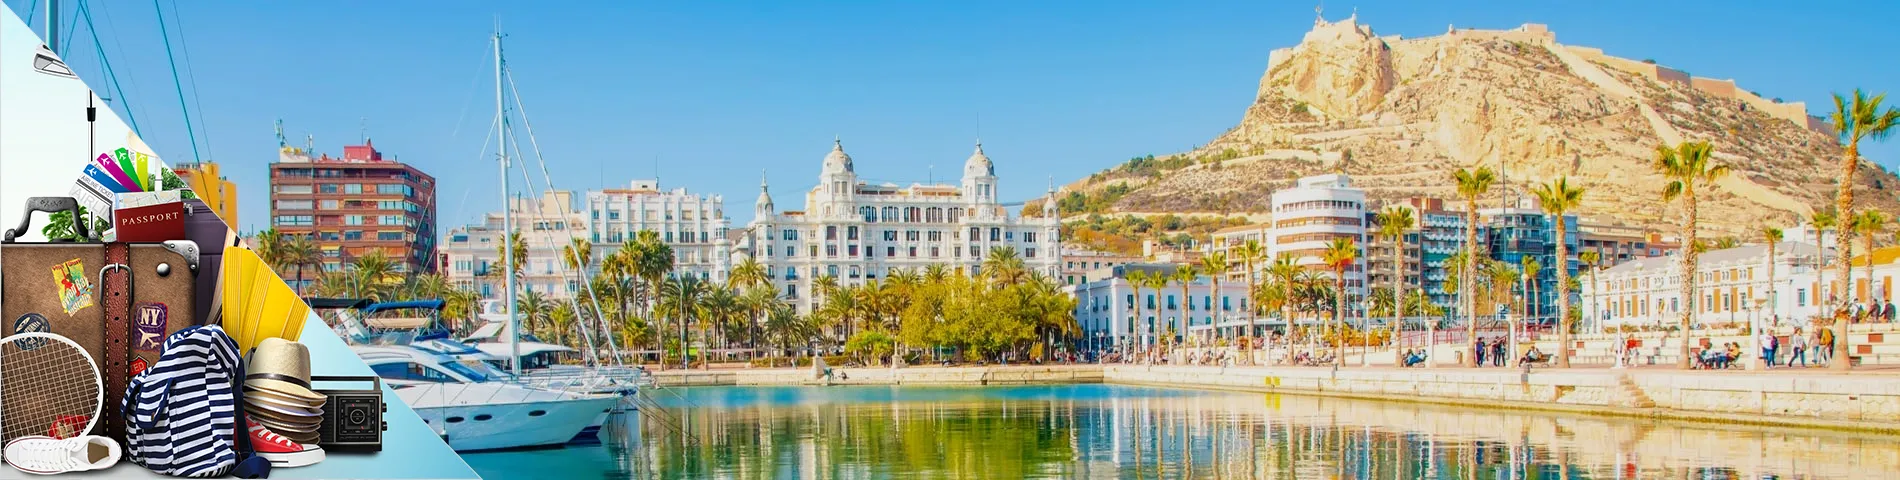 Alicante - Spagnolo per il Turismo